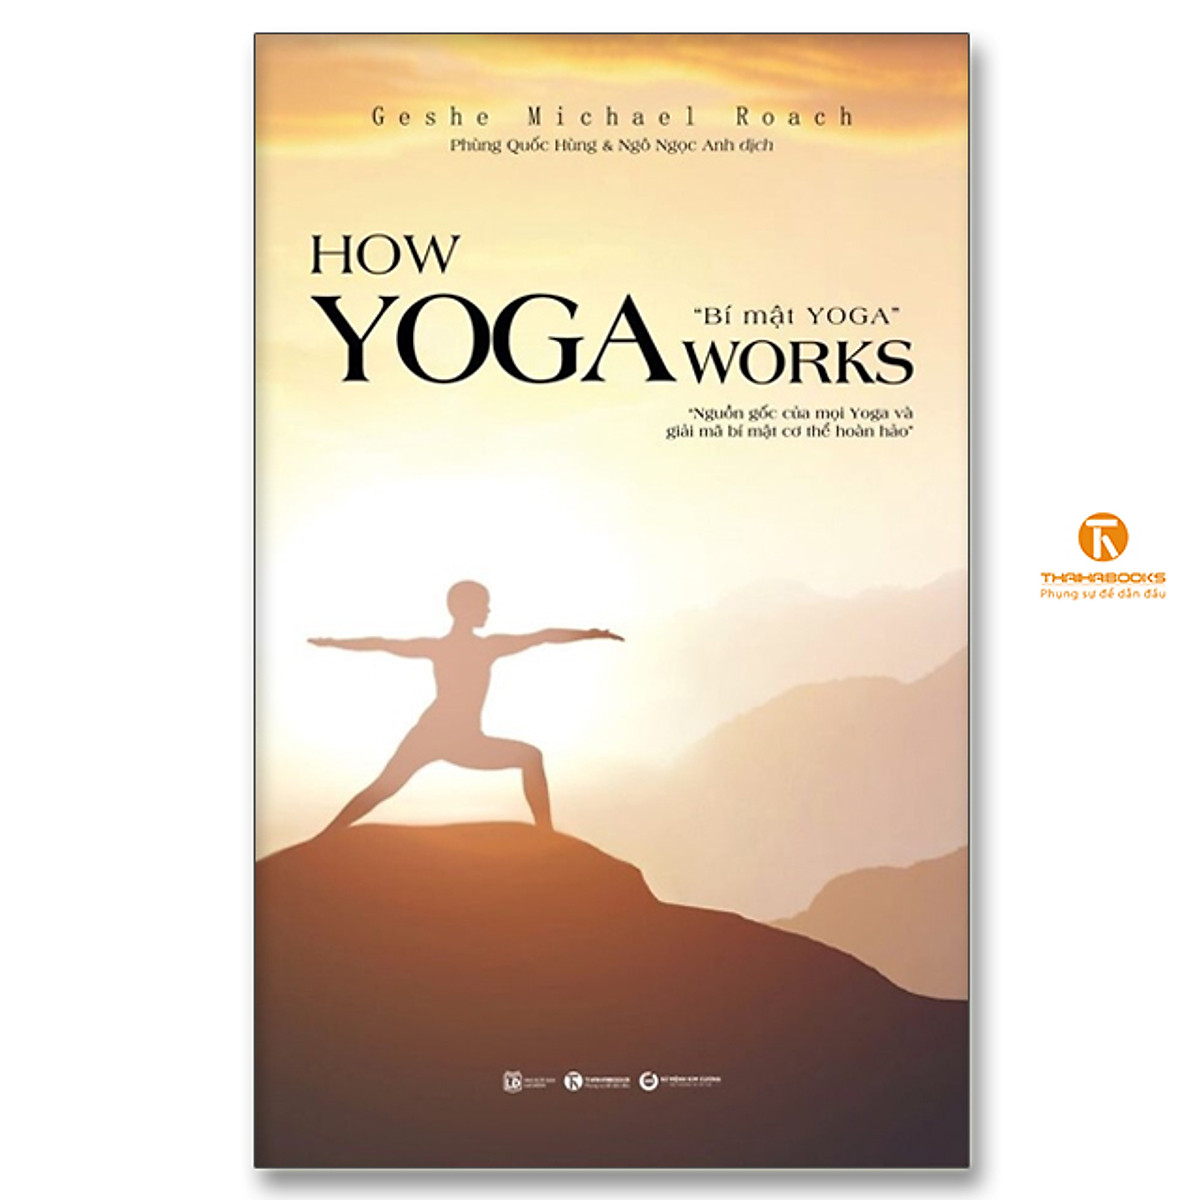 How Yoga Works: Bí Mật Yoga